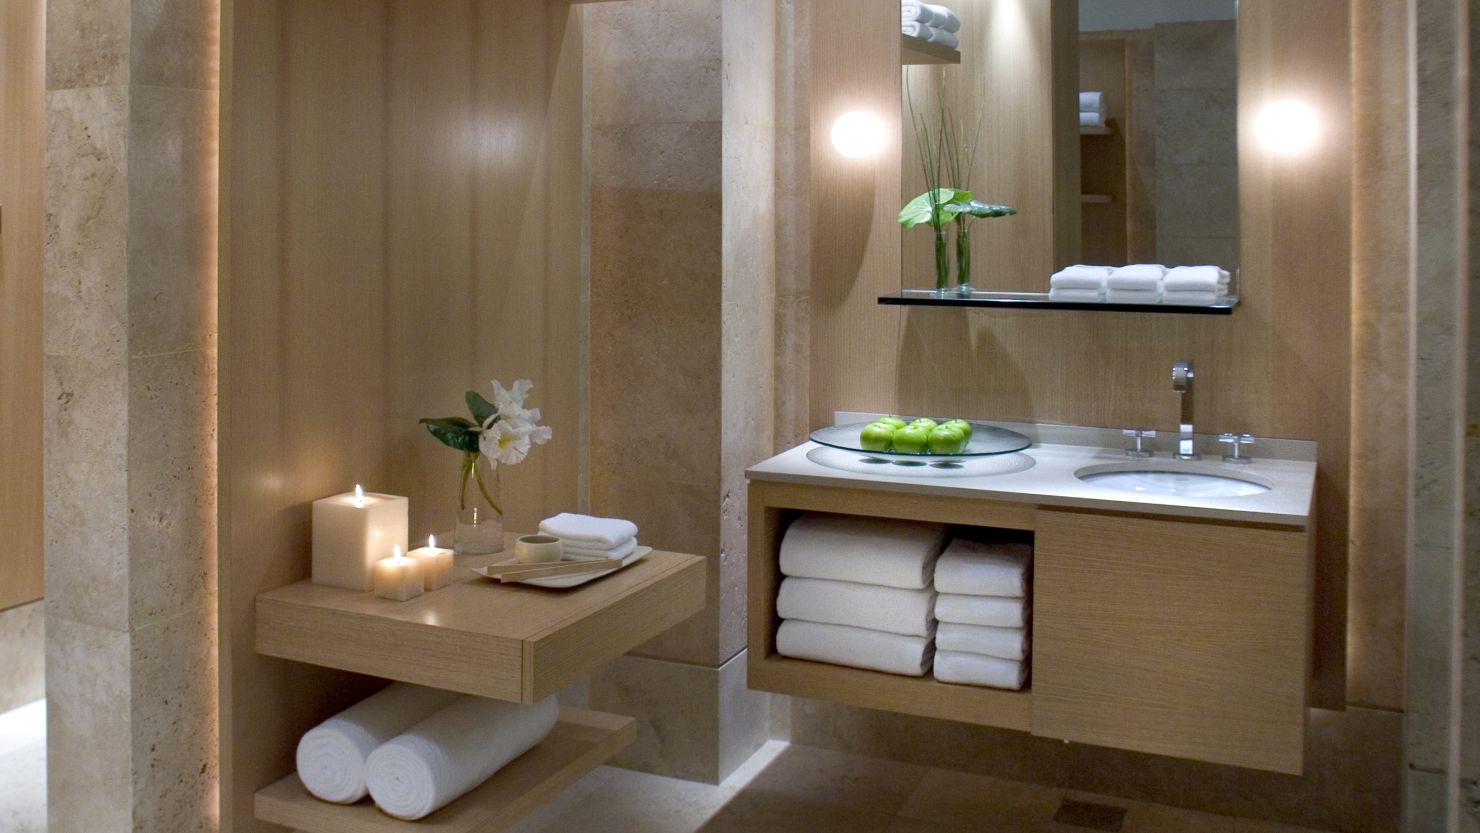 Ritz-Carlton Bath Towel Set